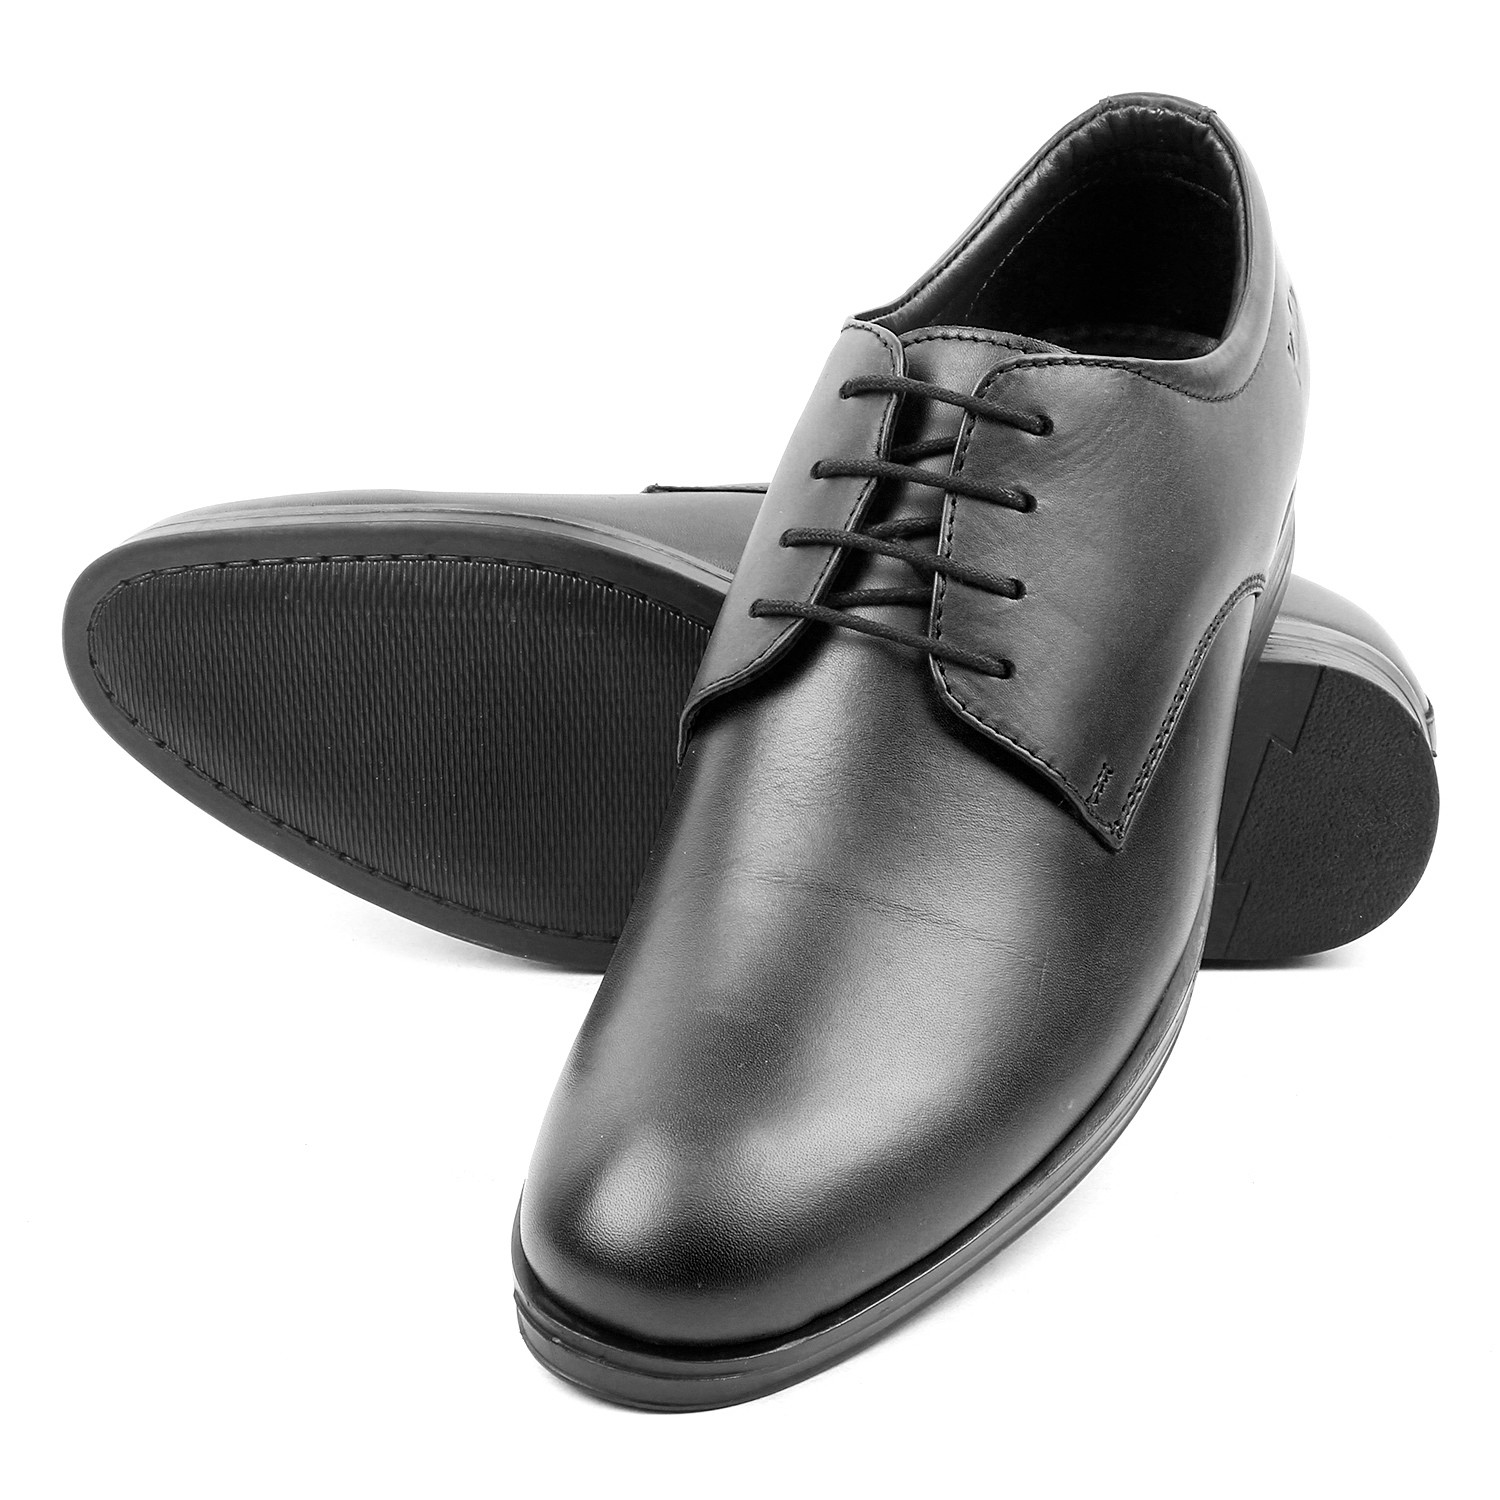 Kosher Leather Black Shoes Men